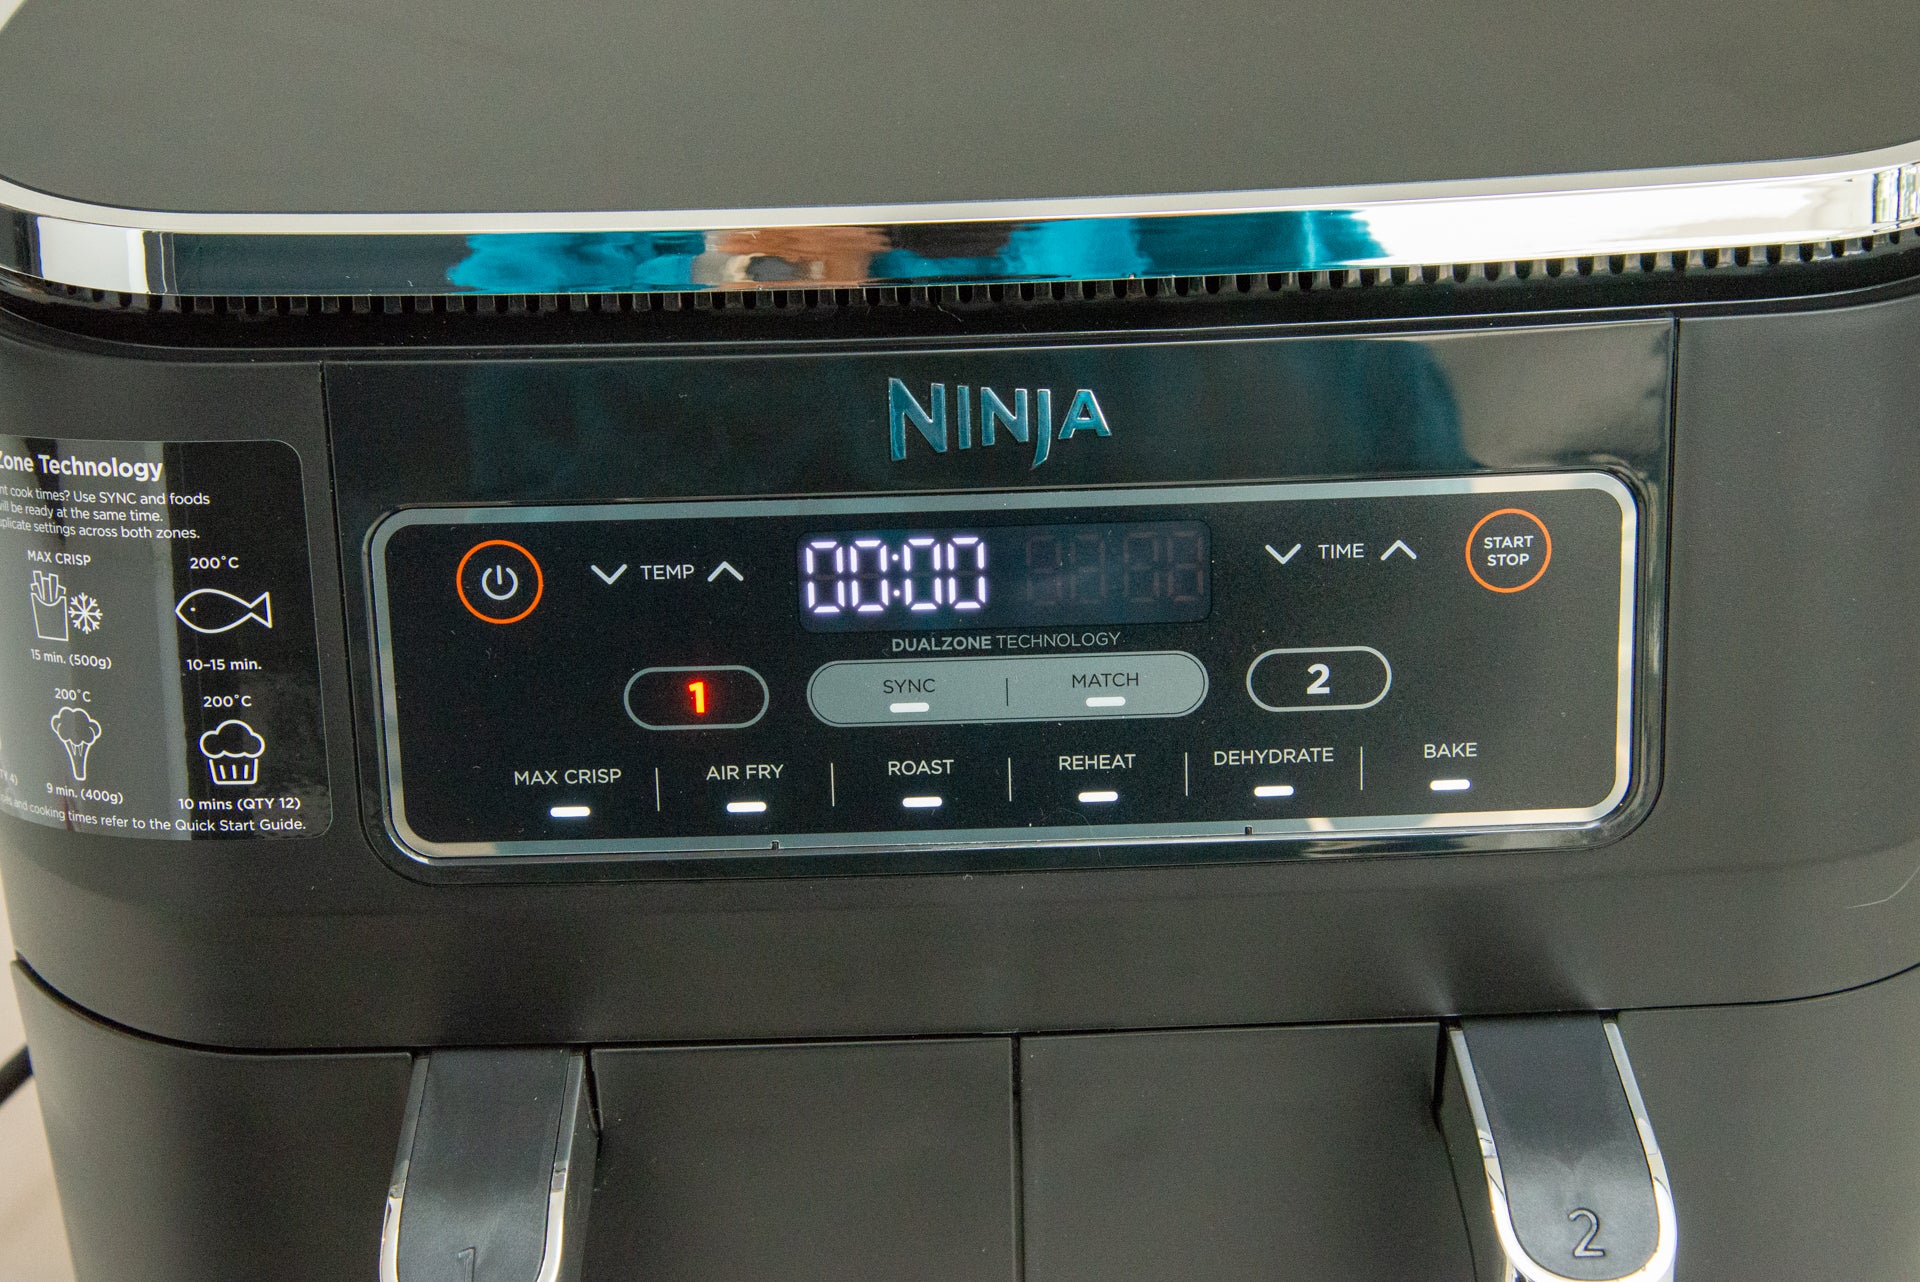 Ninja Foodi Dual Zone 7.6L Air Fryer controls